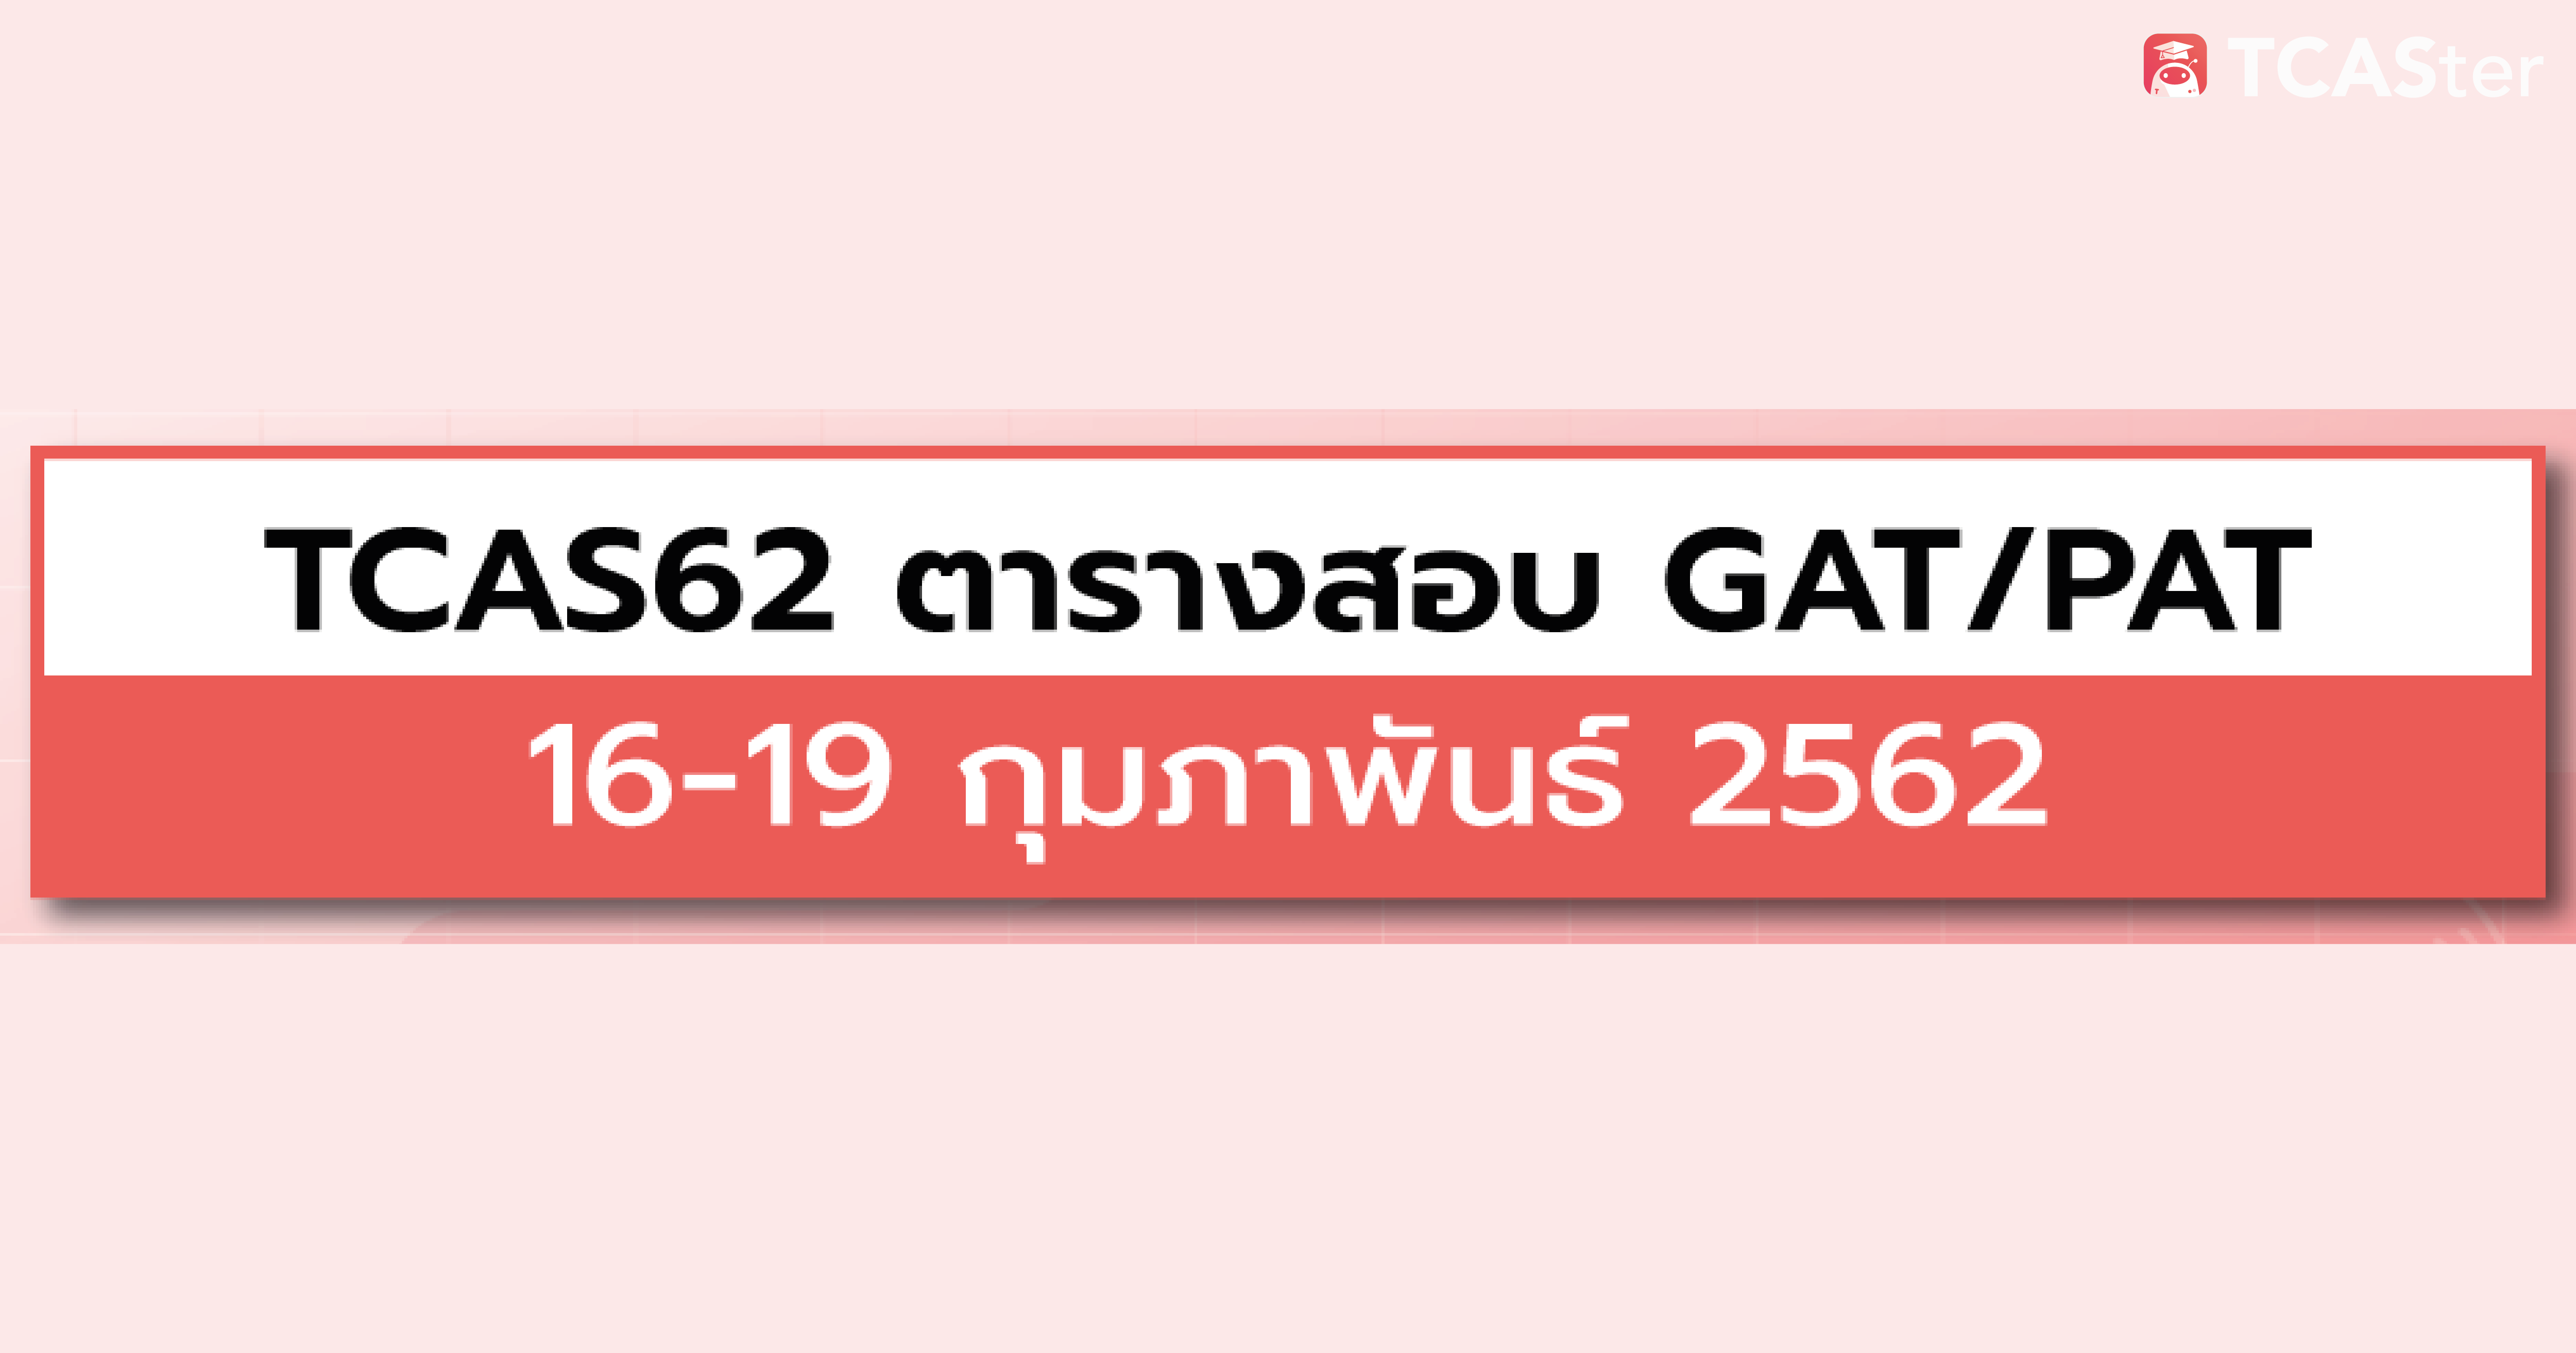  ตารางสอบ GAT/PAT ปีการศึกษา 2562